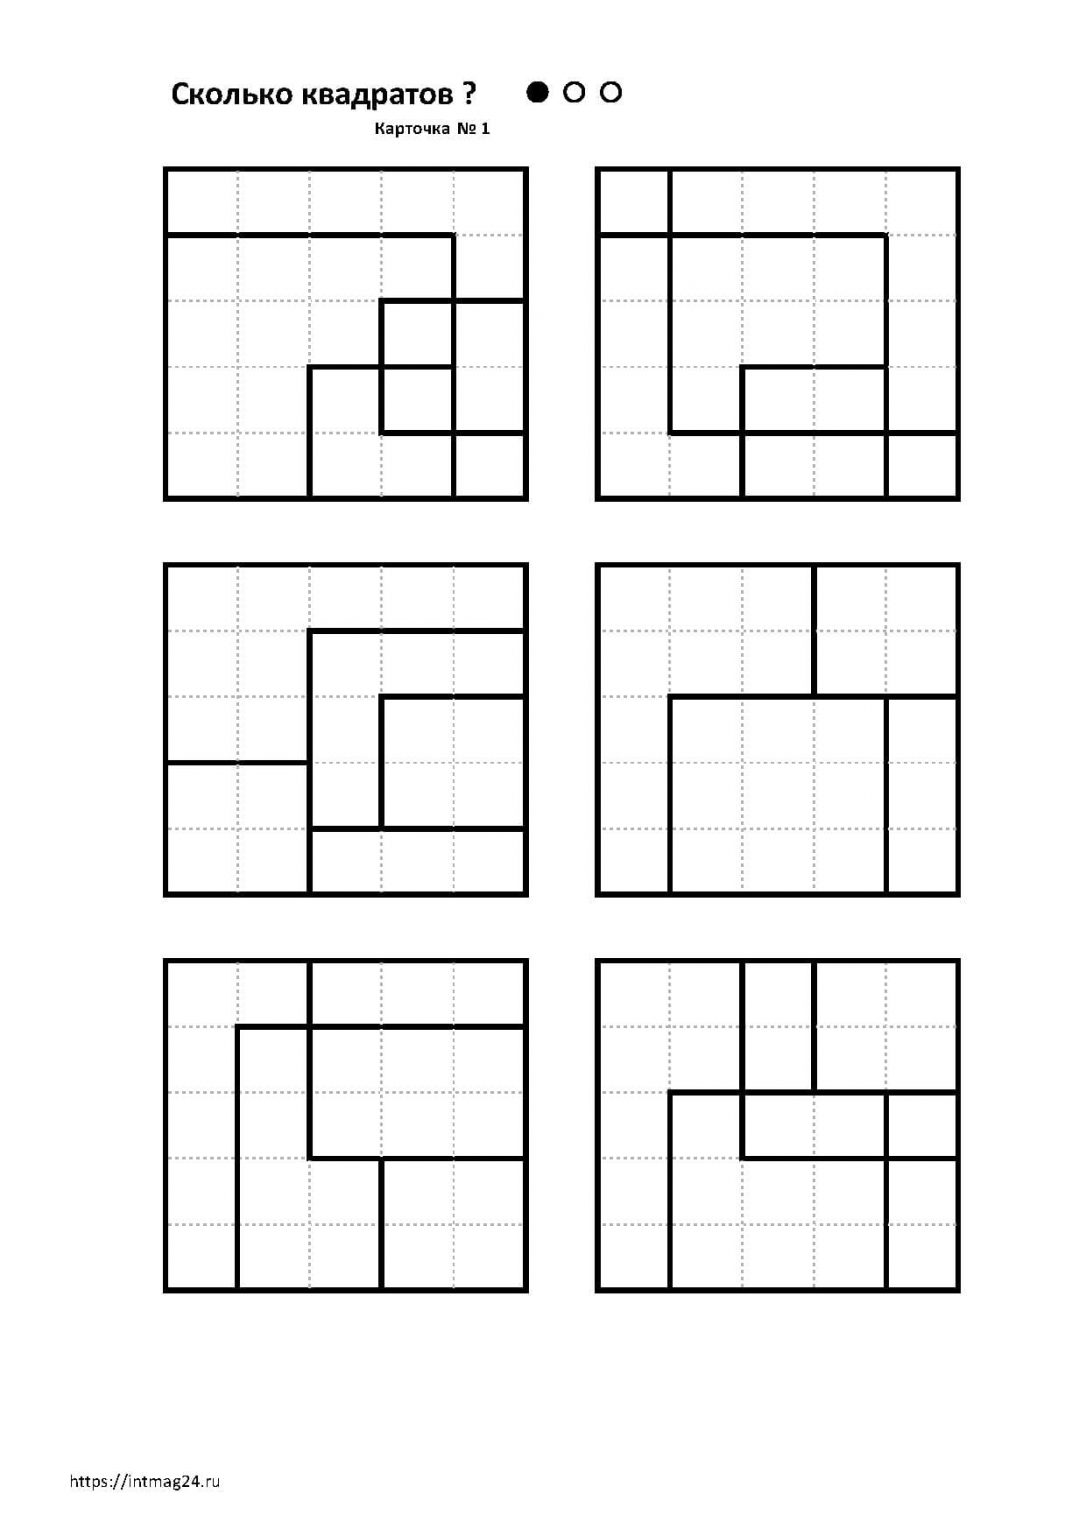 Сколько квадратов на рисунке